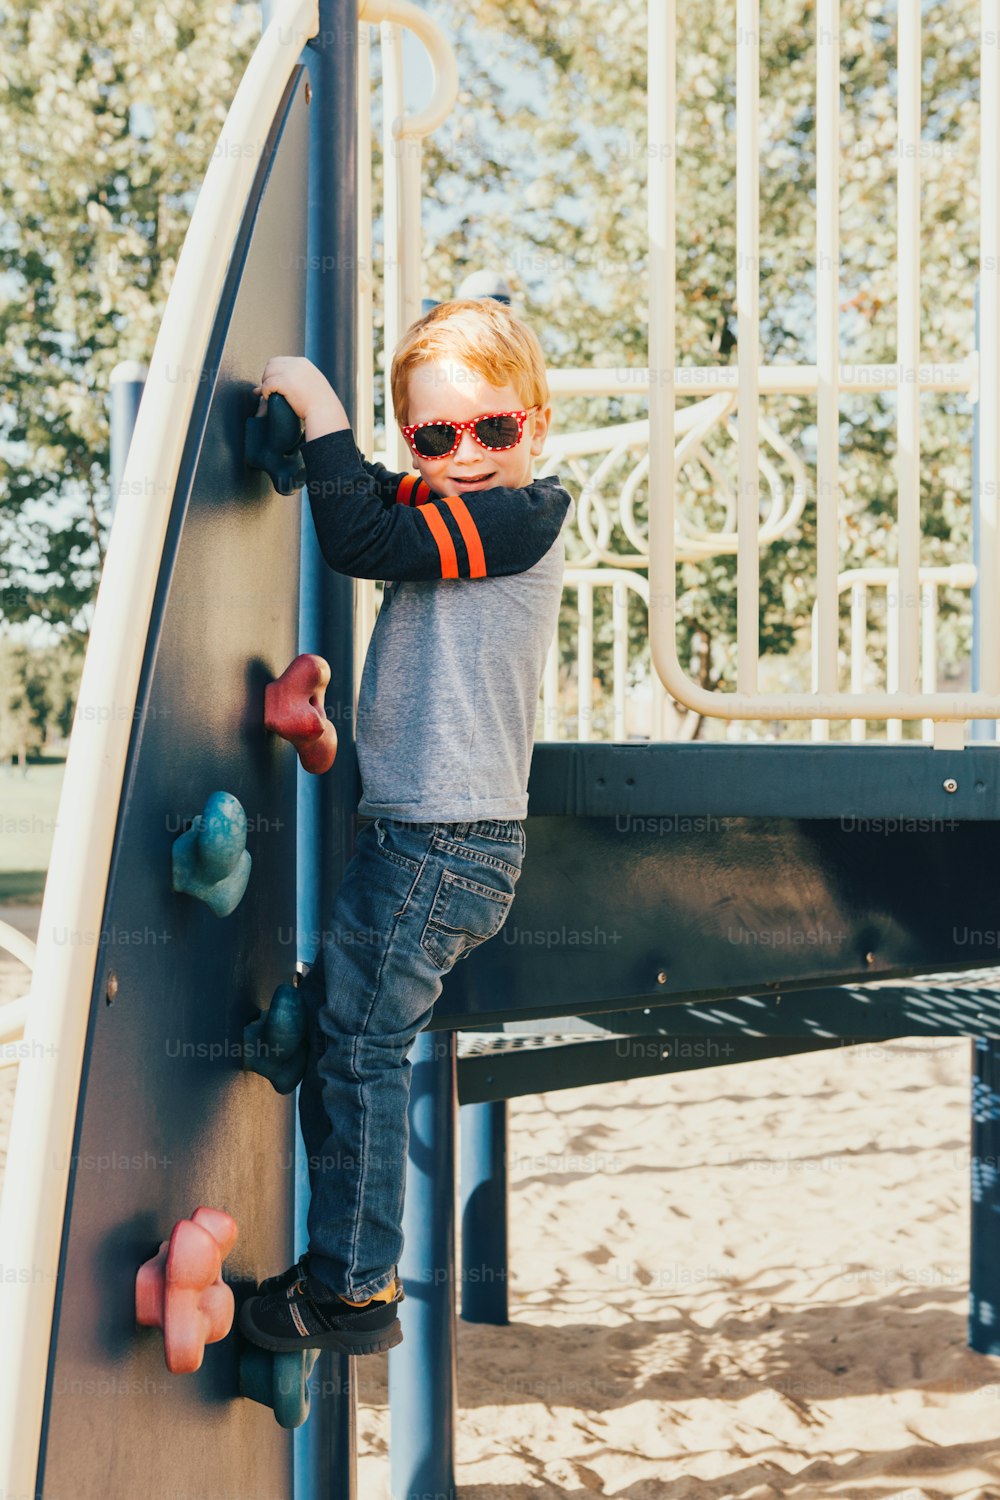 선글라스를 끼고 행복한 미소를 짓고 있는 작은 미취학 소년이 여름날 야외 놀이터에서 암벽을 오르고 있다. 행복한 어린 시절 생활 방식 개념입니다. 아이들을 위한 계절별 야외 활동.